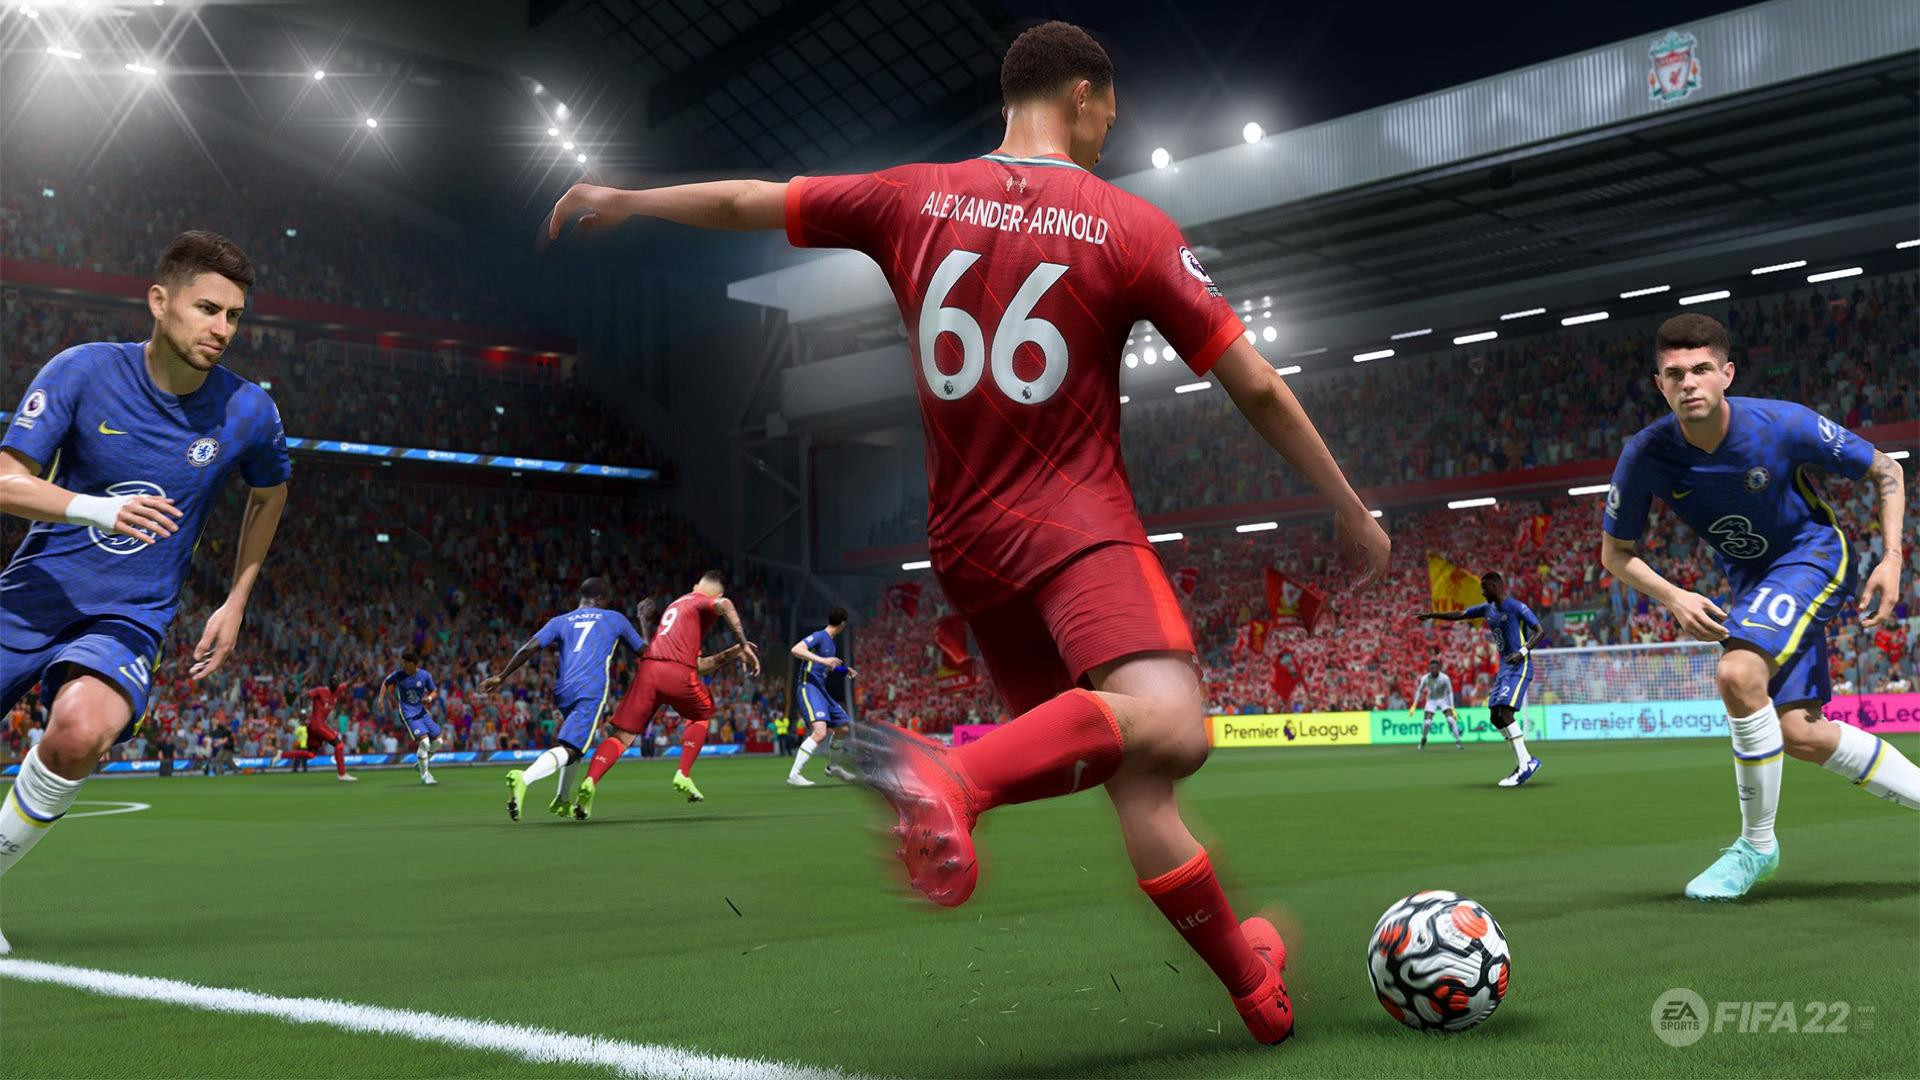 Скриншот из игры FIFA 22 под номером 20